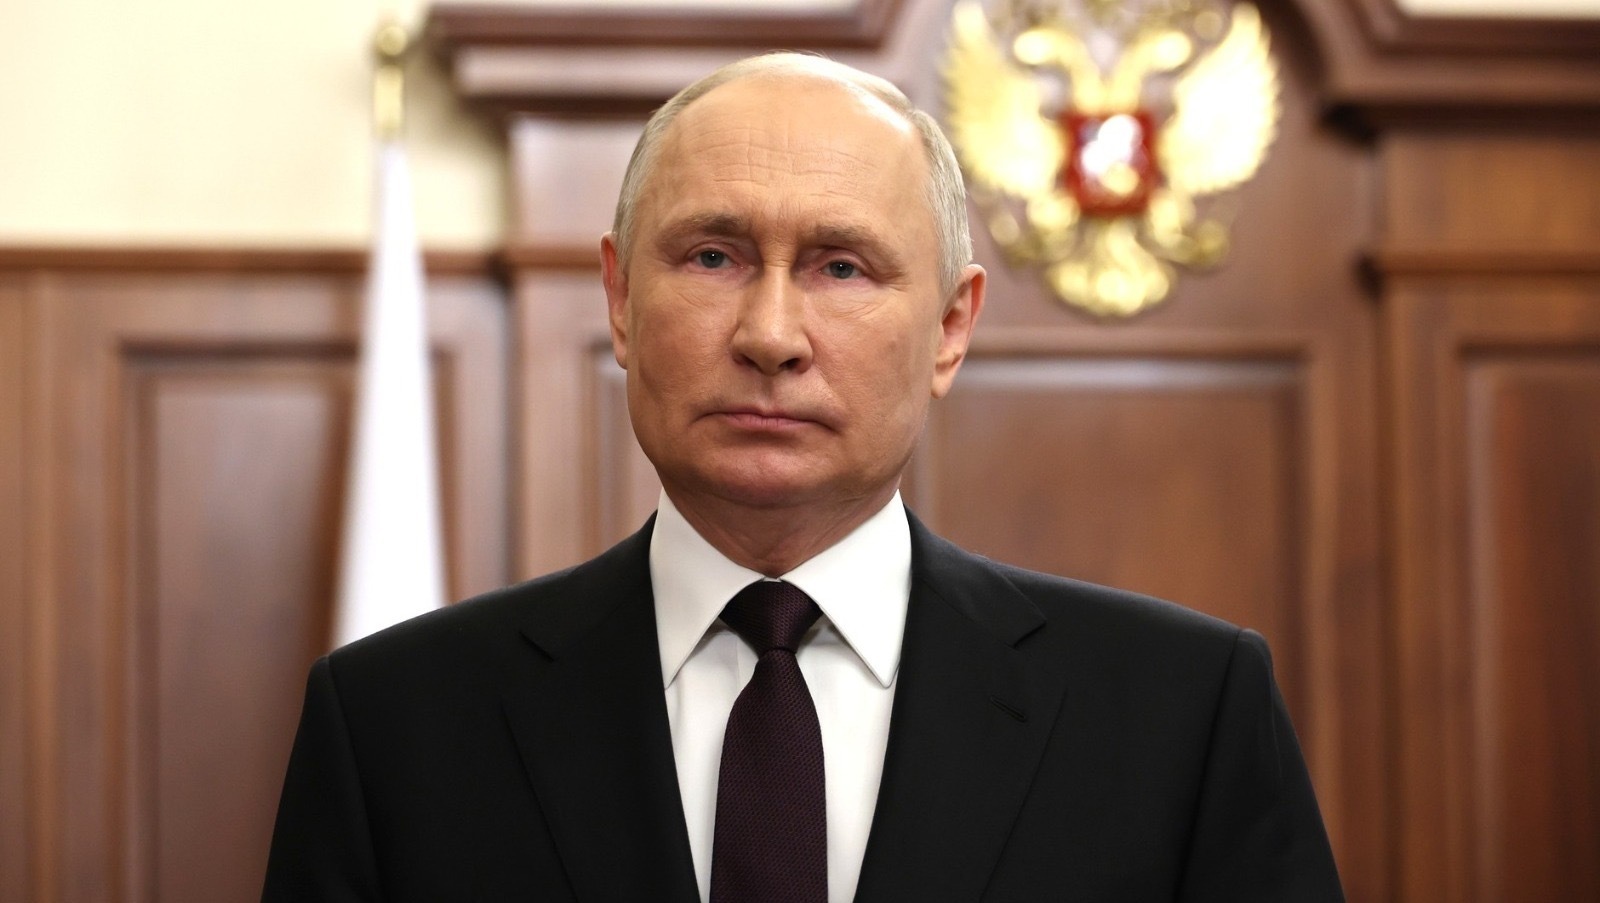 Построить новый мир: как Владимир Путин оценил настоящее и будущее России и её экономики?